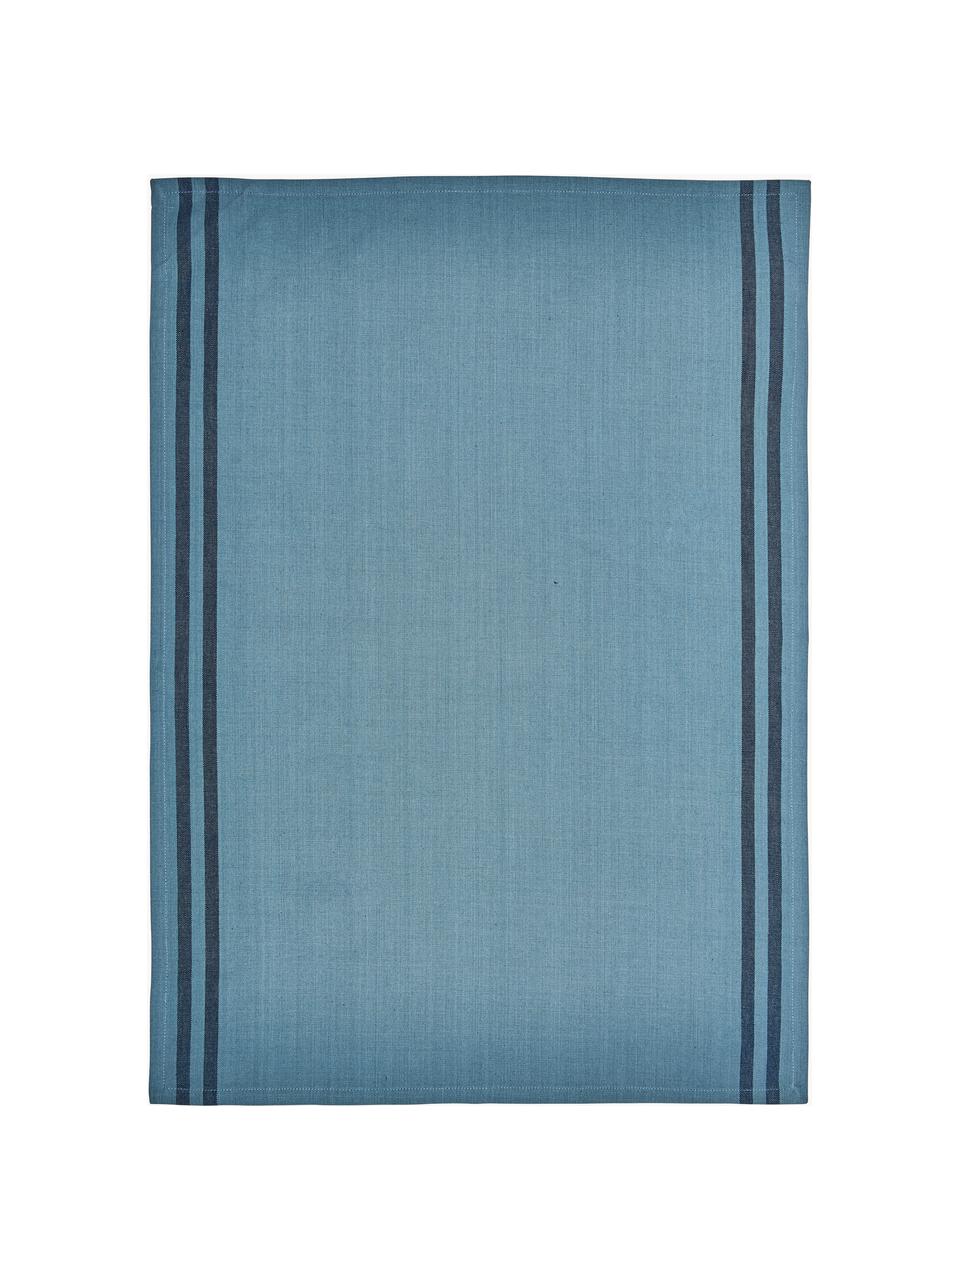 Gestreifte Baumwoll-Geschirrtücher Soft Tools, 2er-Set, 100 % Baumwolle, Blautöne, B 50 x L 70 cm